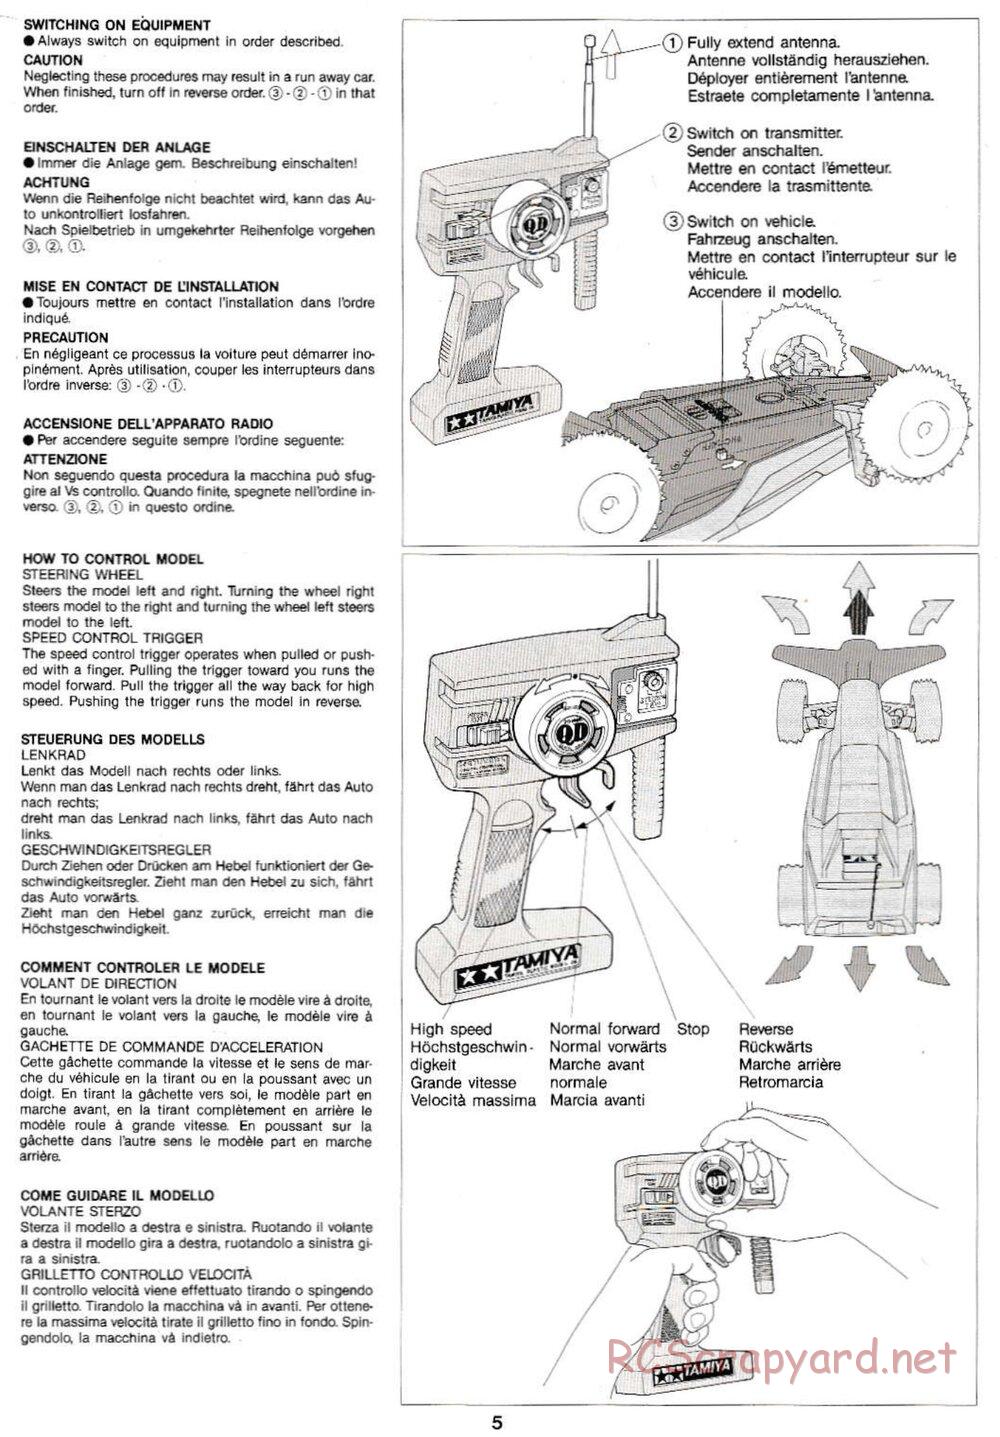 Tamiya - Super Sabre QD Chassis - Manual - Page 5